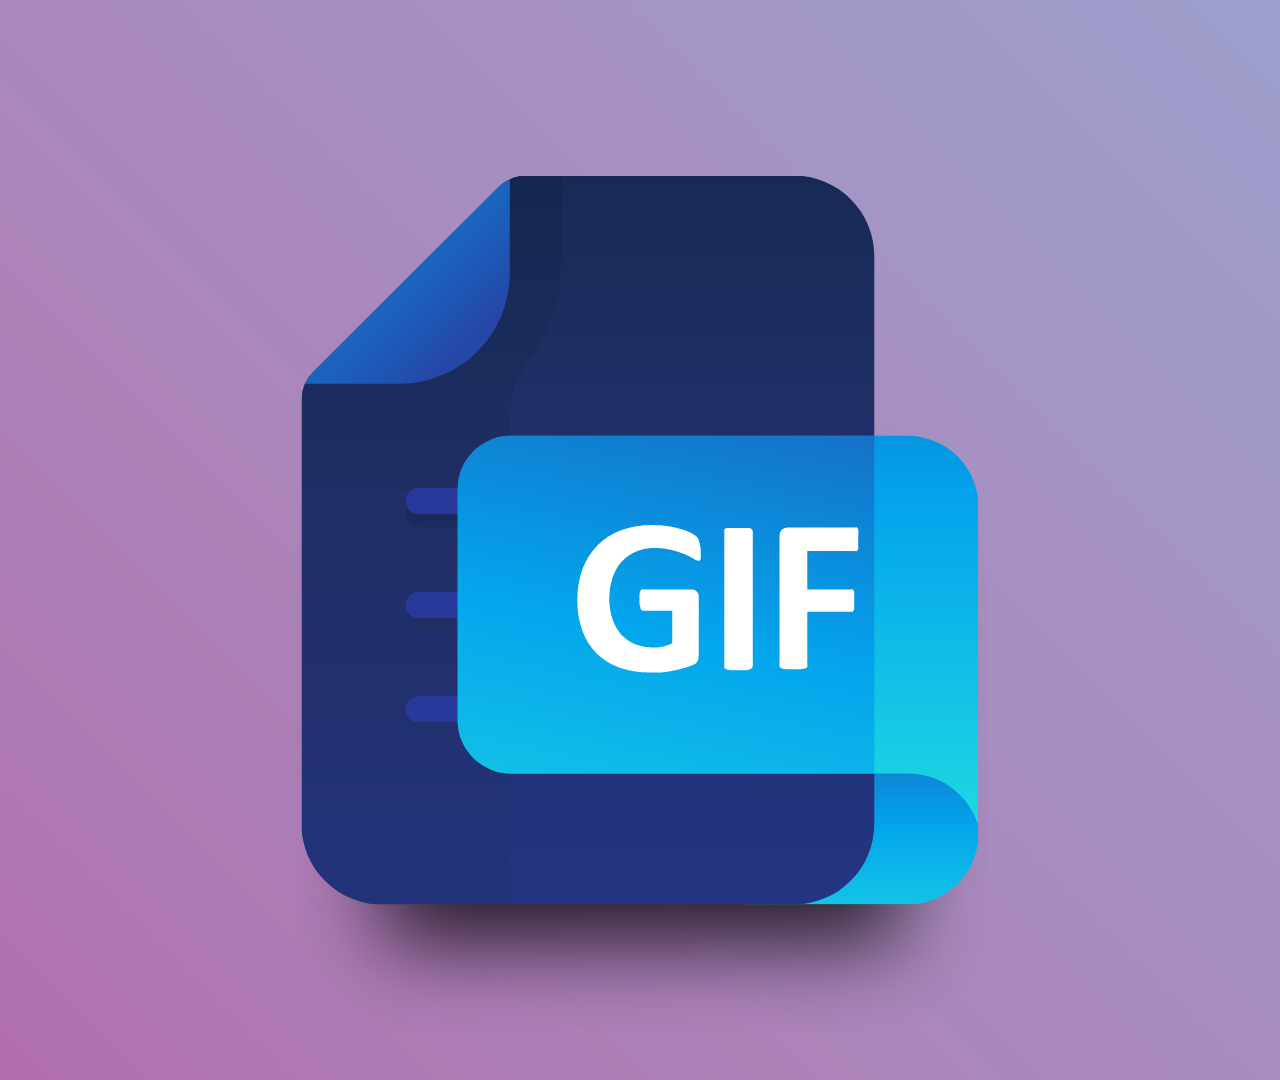 ImageTypes-GIF